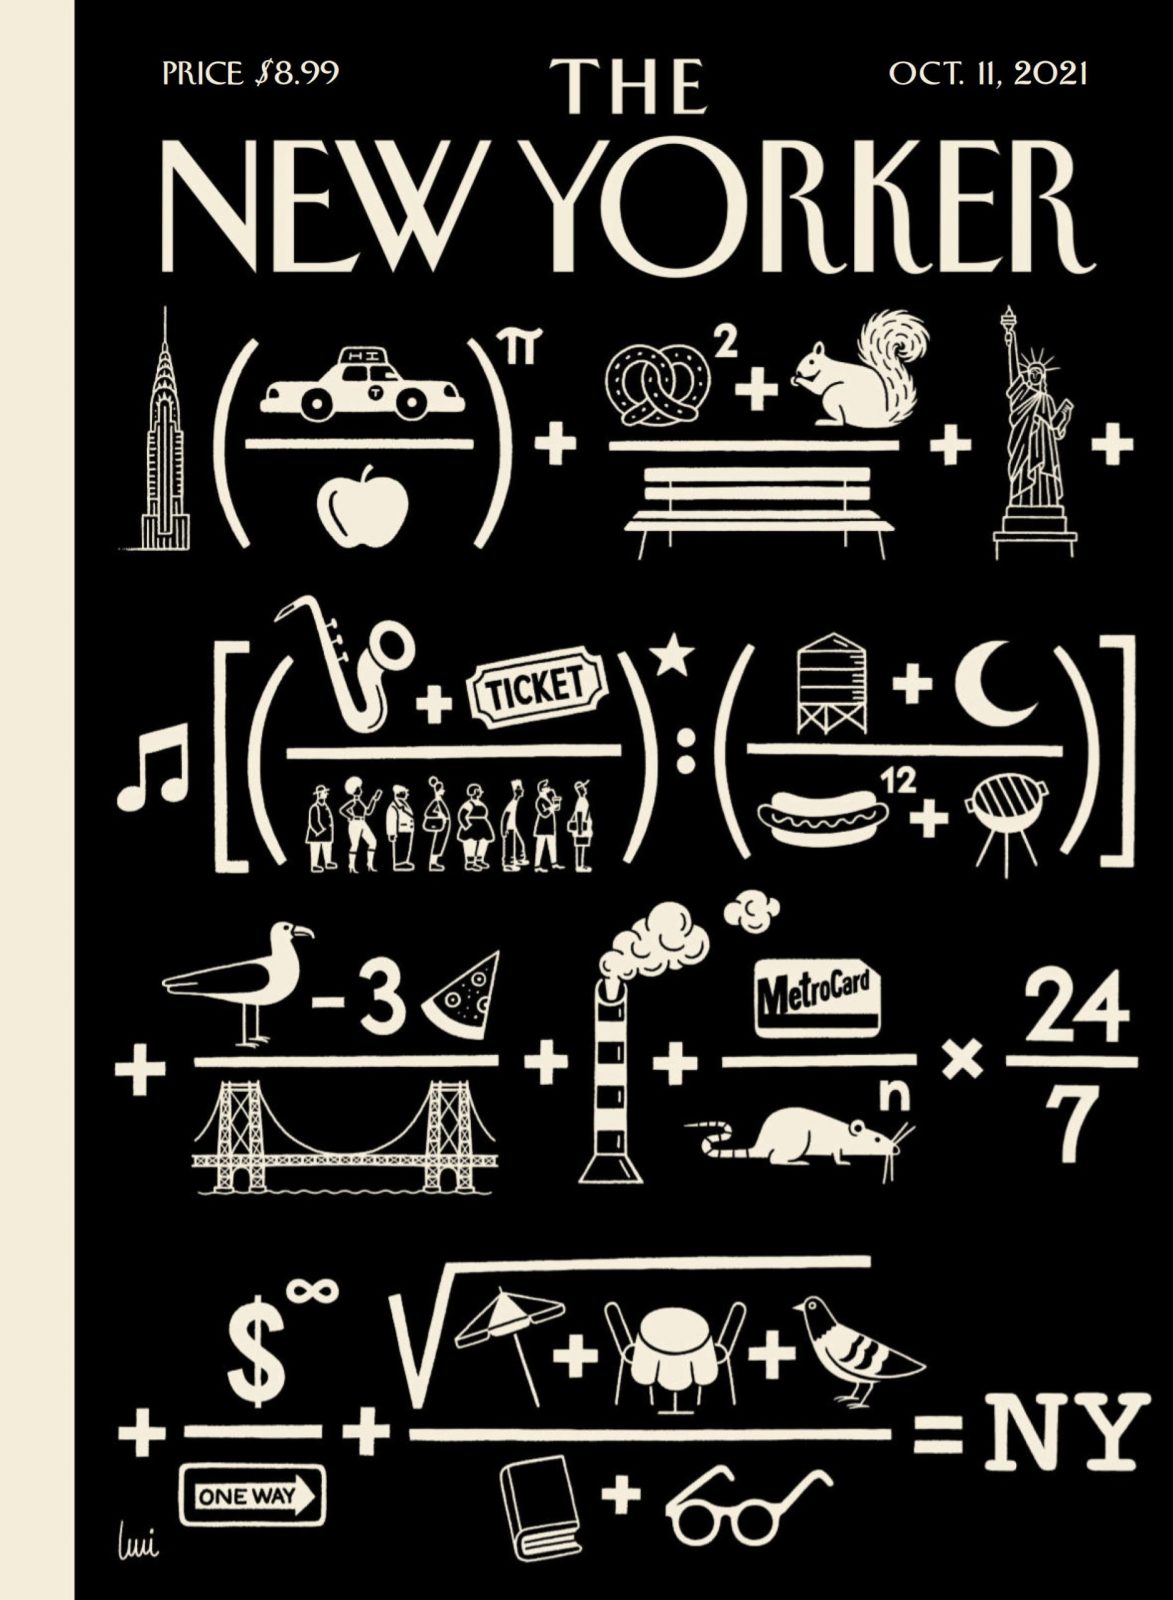 纽约客杂志 The New Yorker 20211011（OCT 11 2021）